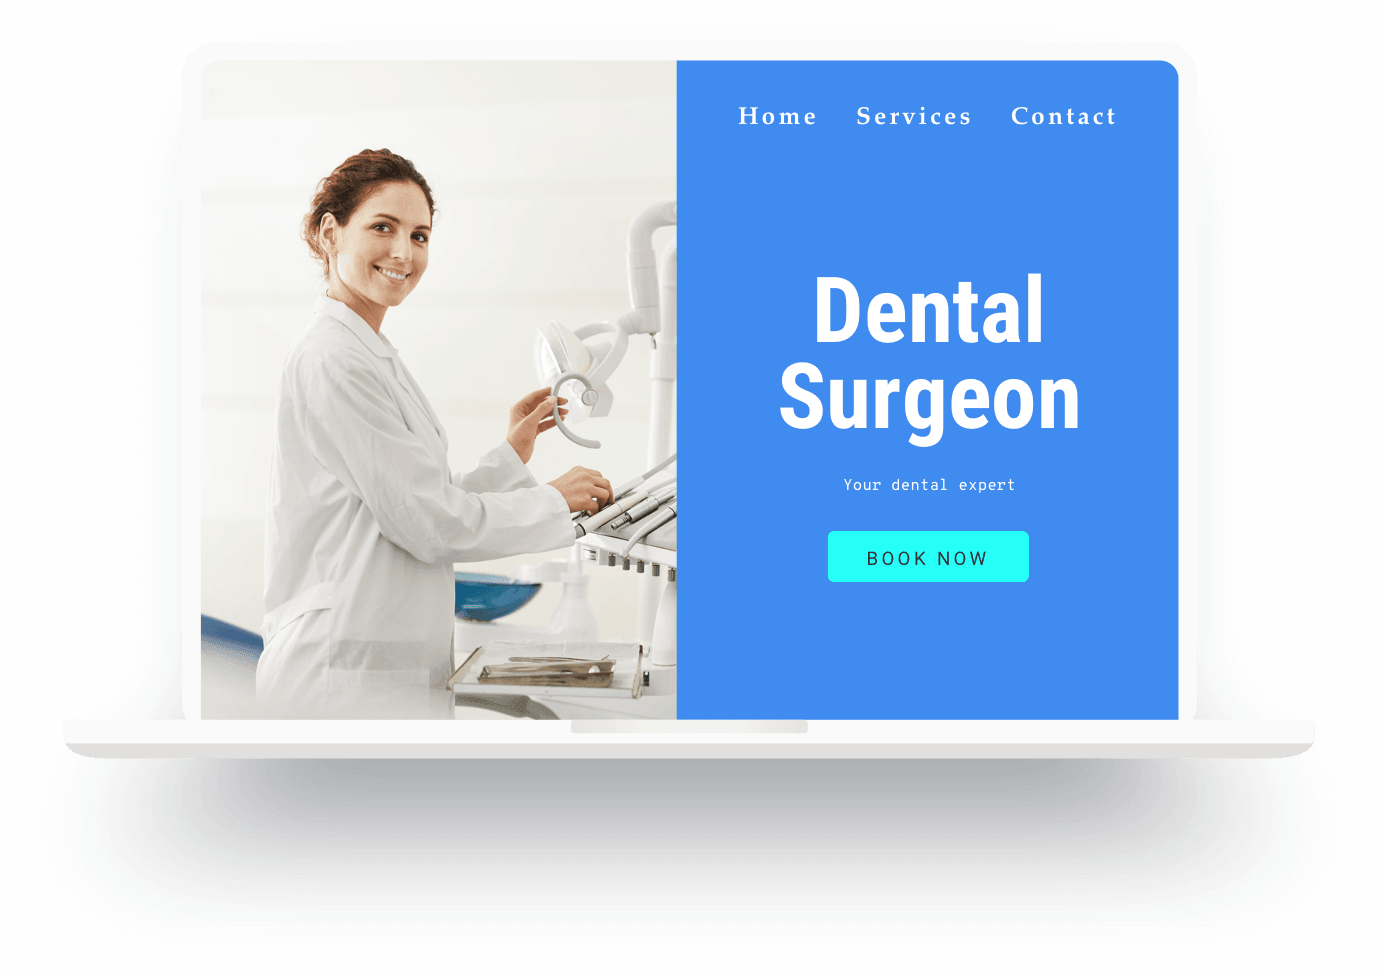 Voorbeeld website tandartspraktijk, gemaakt met Jimdo